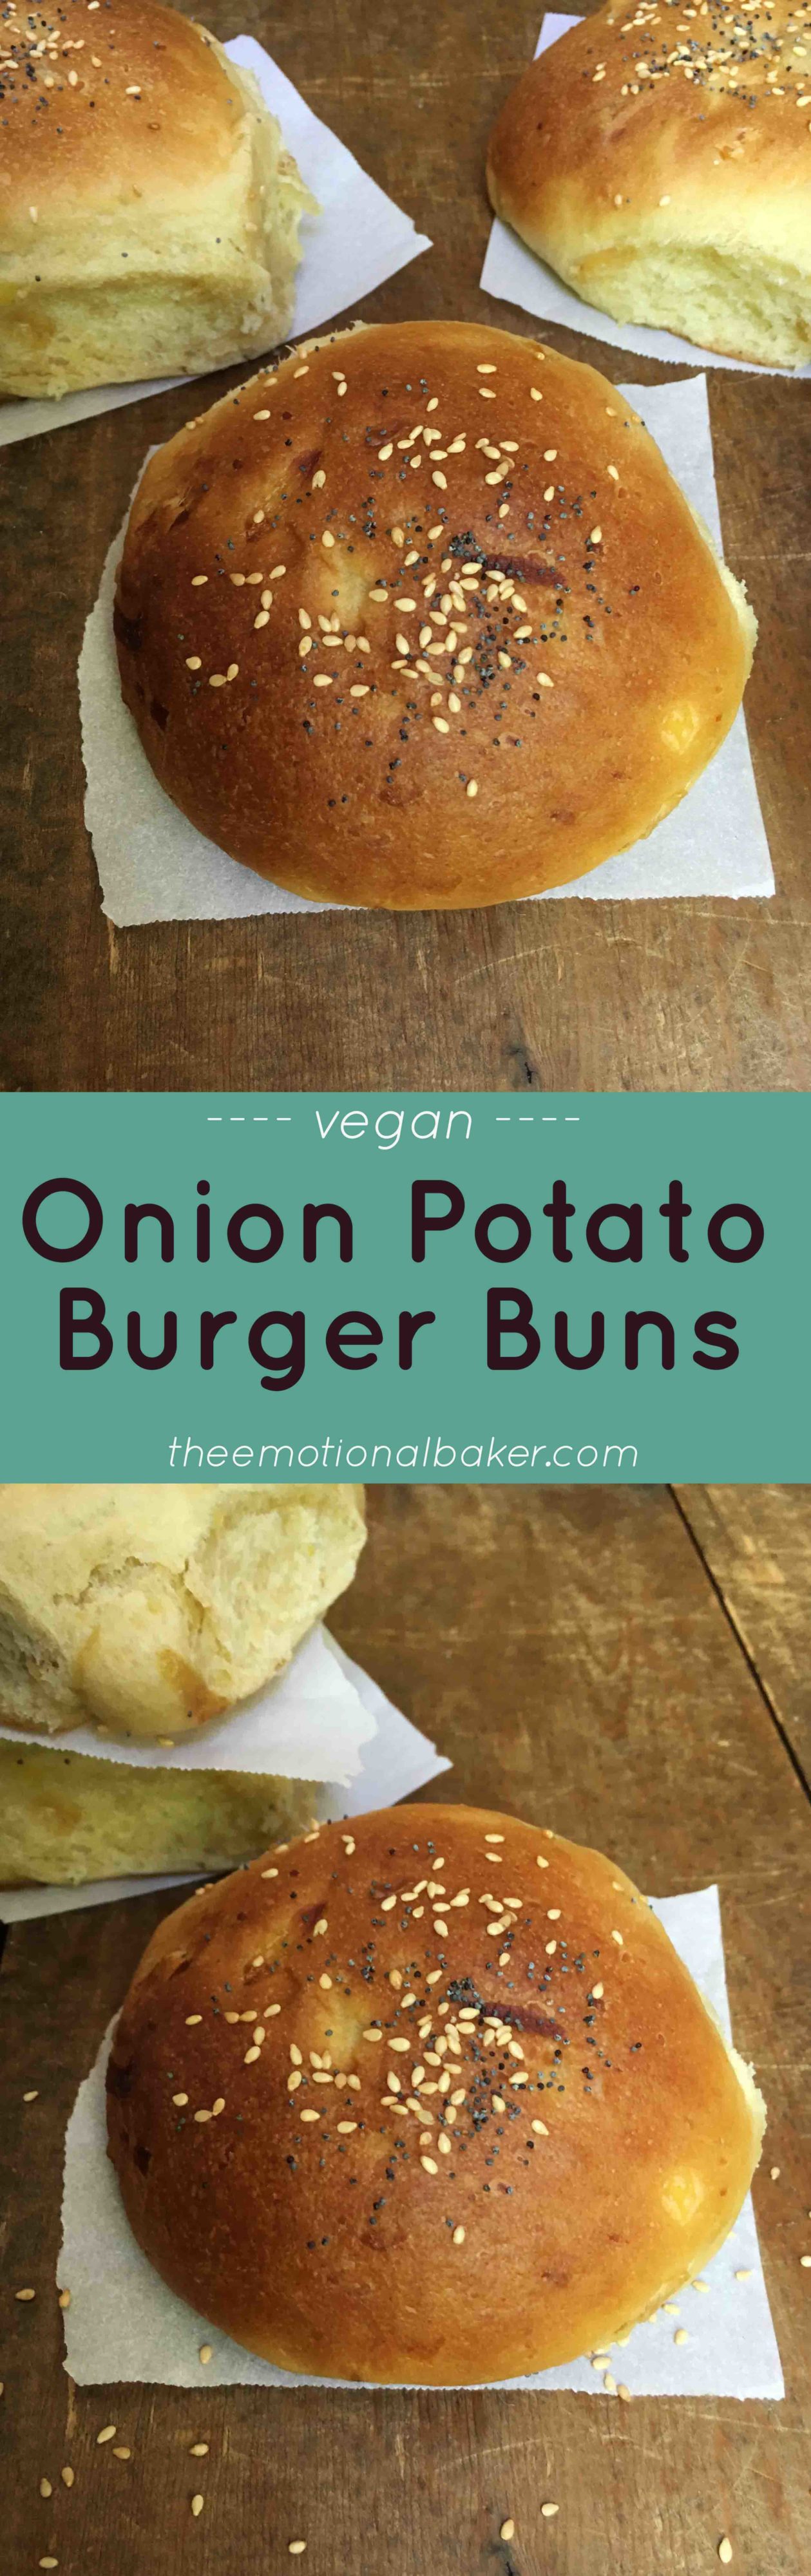 Onion Potato Burger Buns